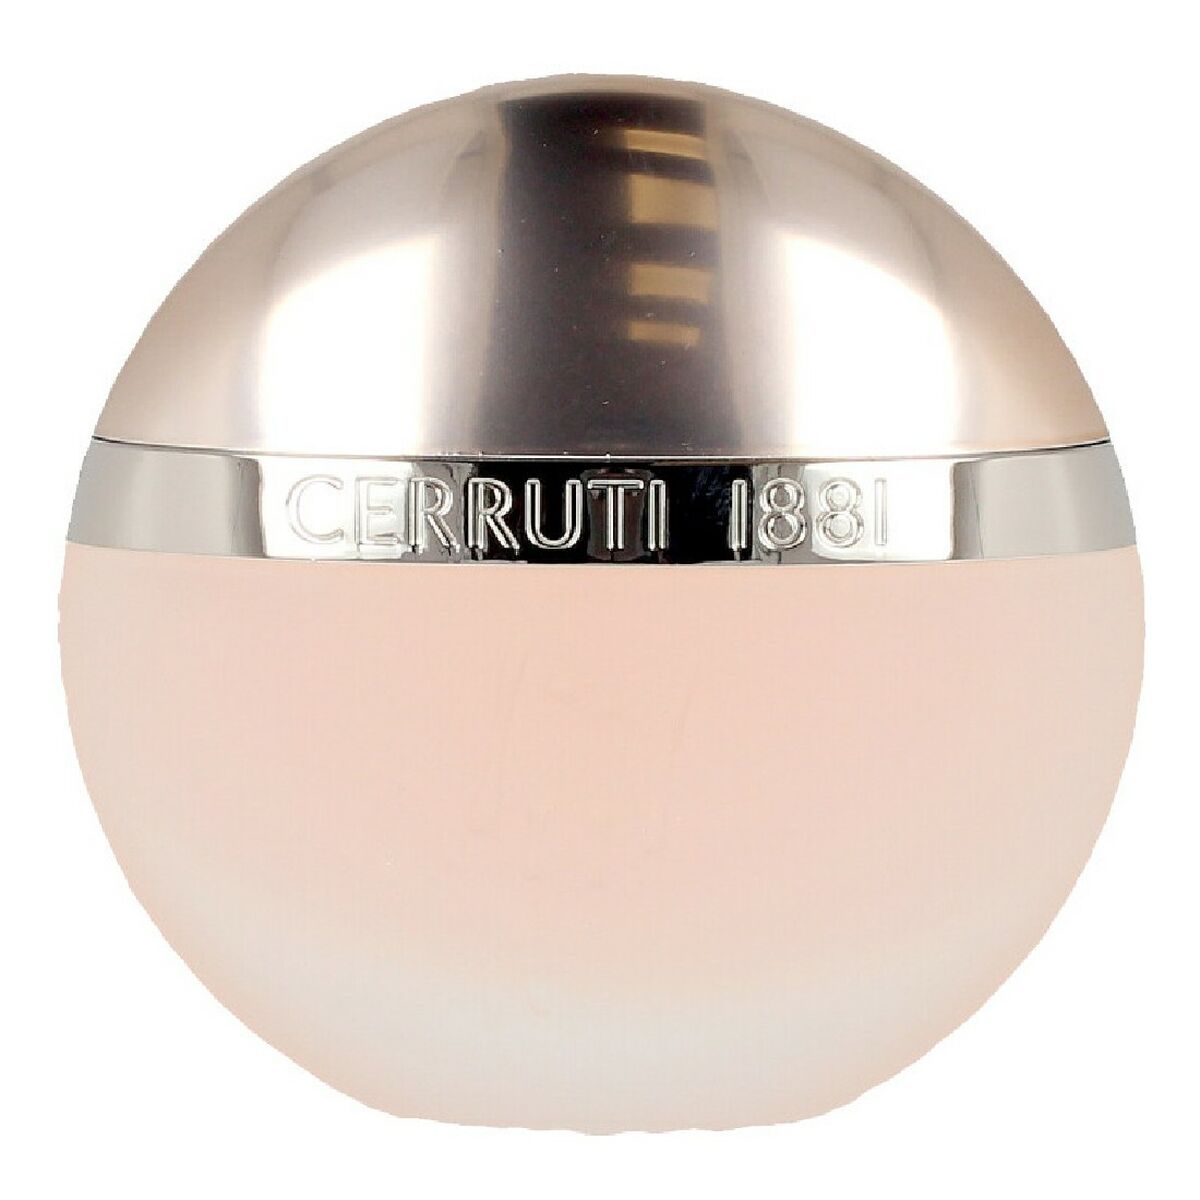 Women's Perfume 1881 Pour Femme Cerruti PBY32280087000 EDT 50 ml